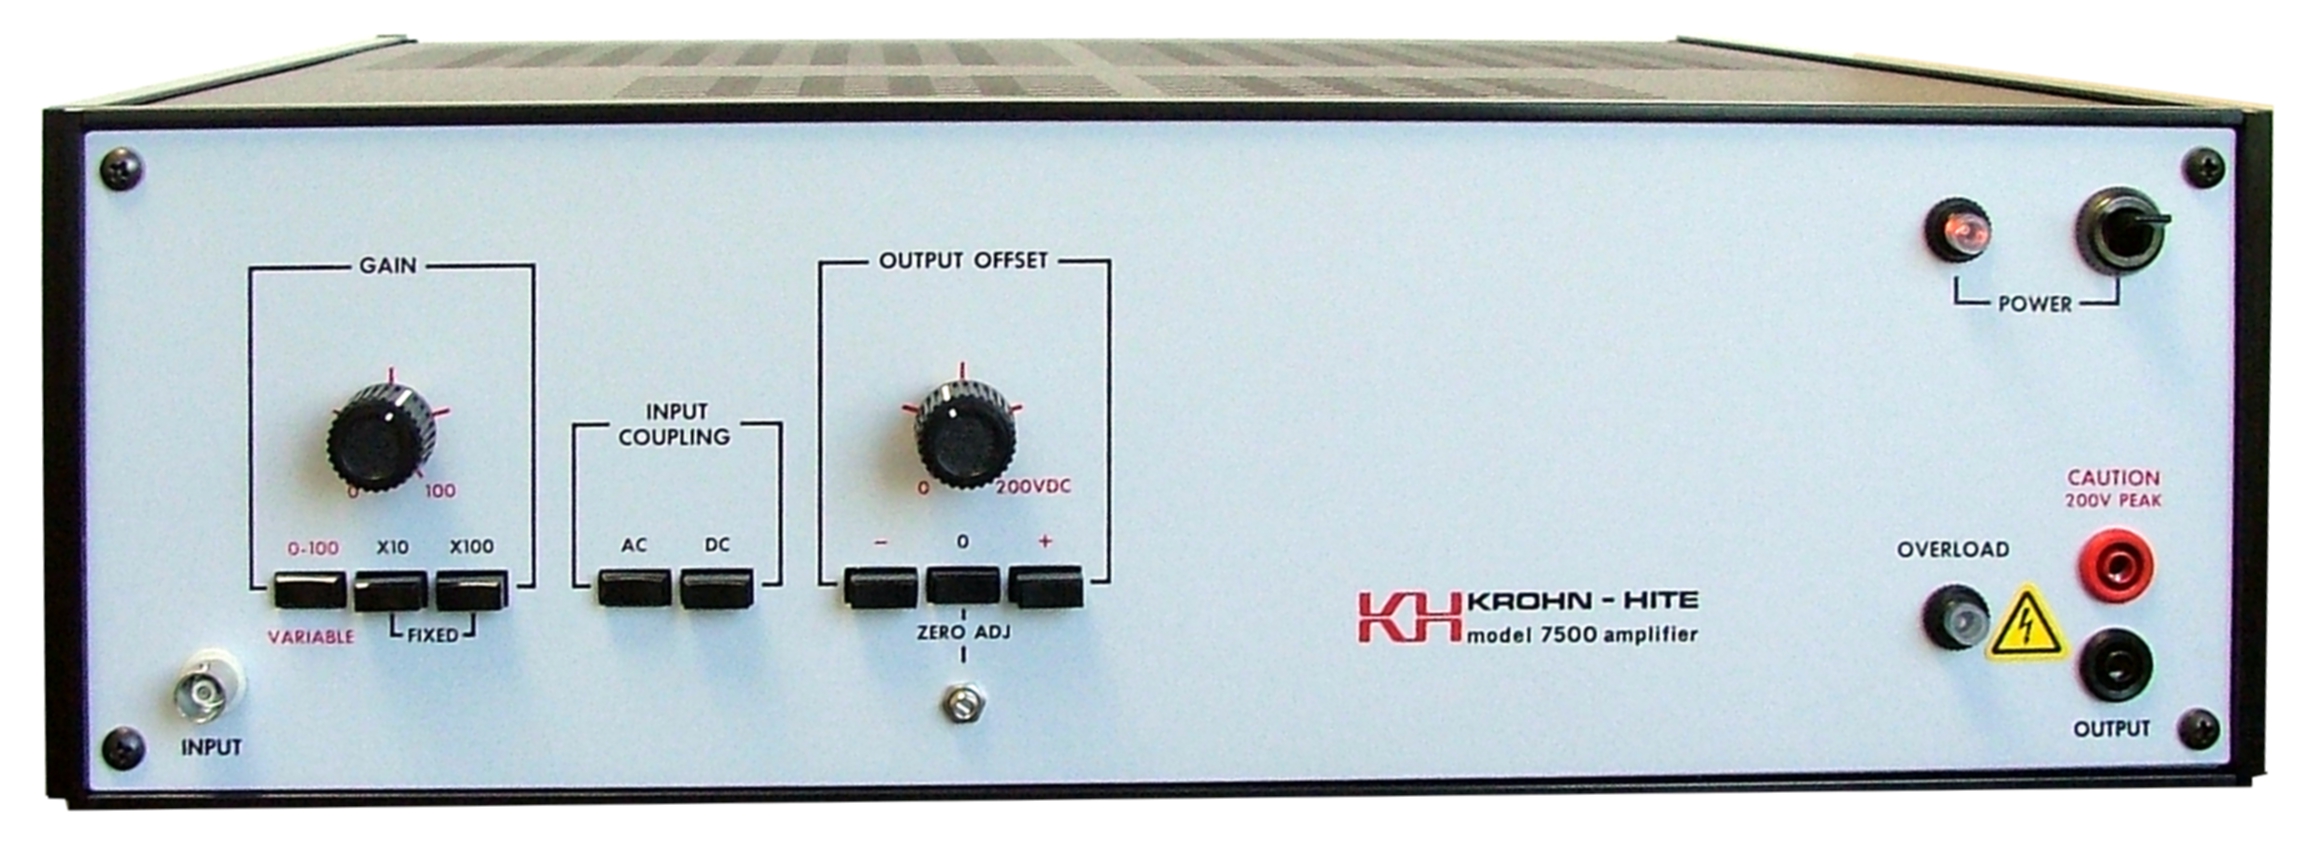 Model 7500 is a 75 Watt, 140rms, dc to 1MHz Power Amplifier